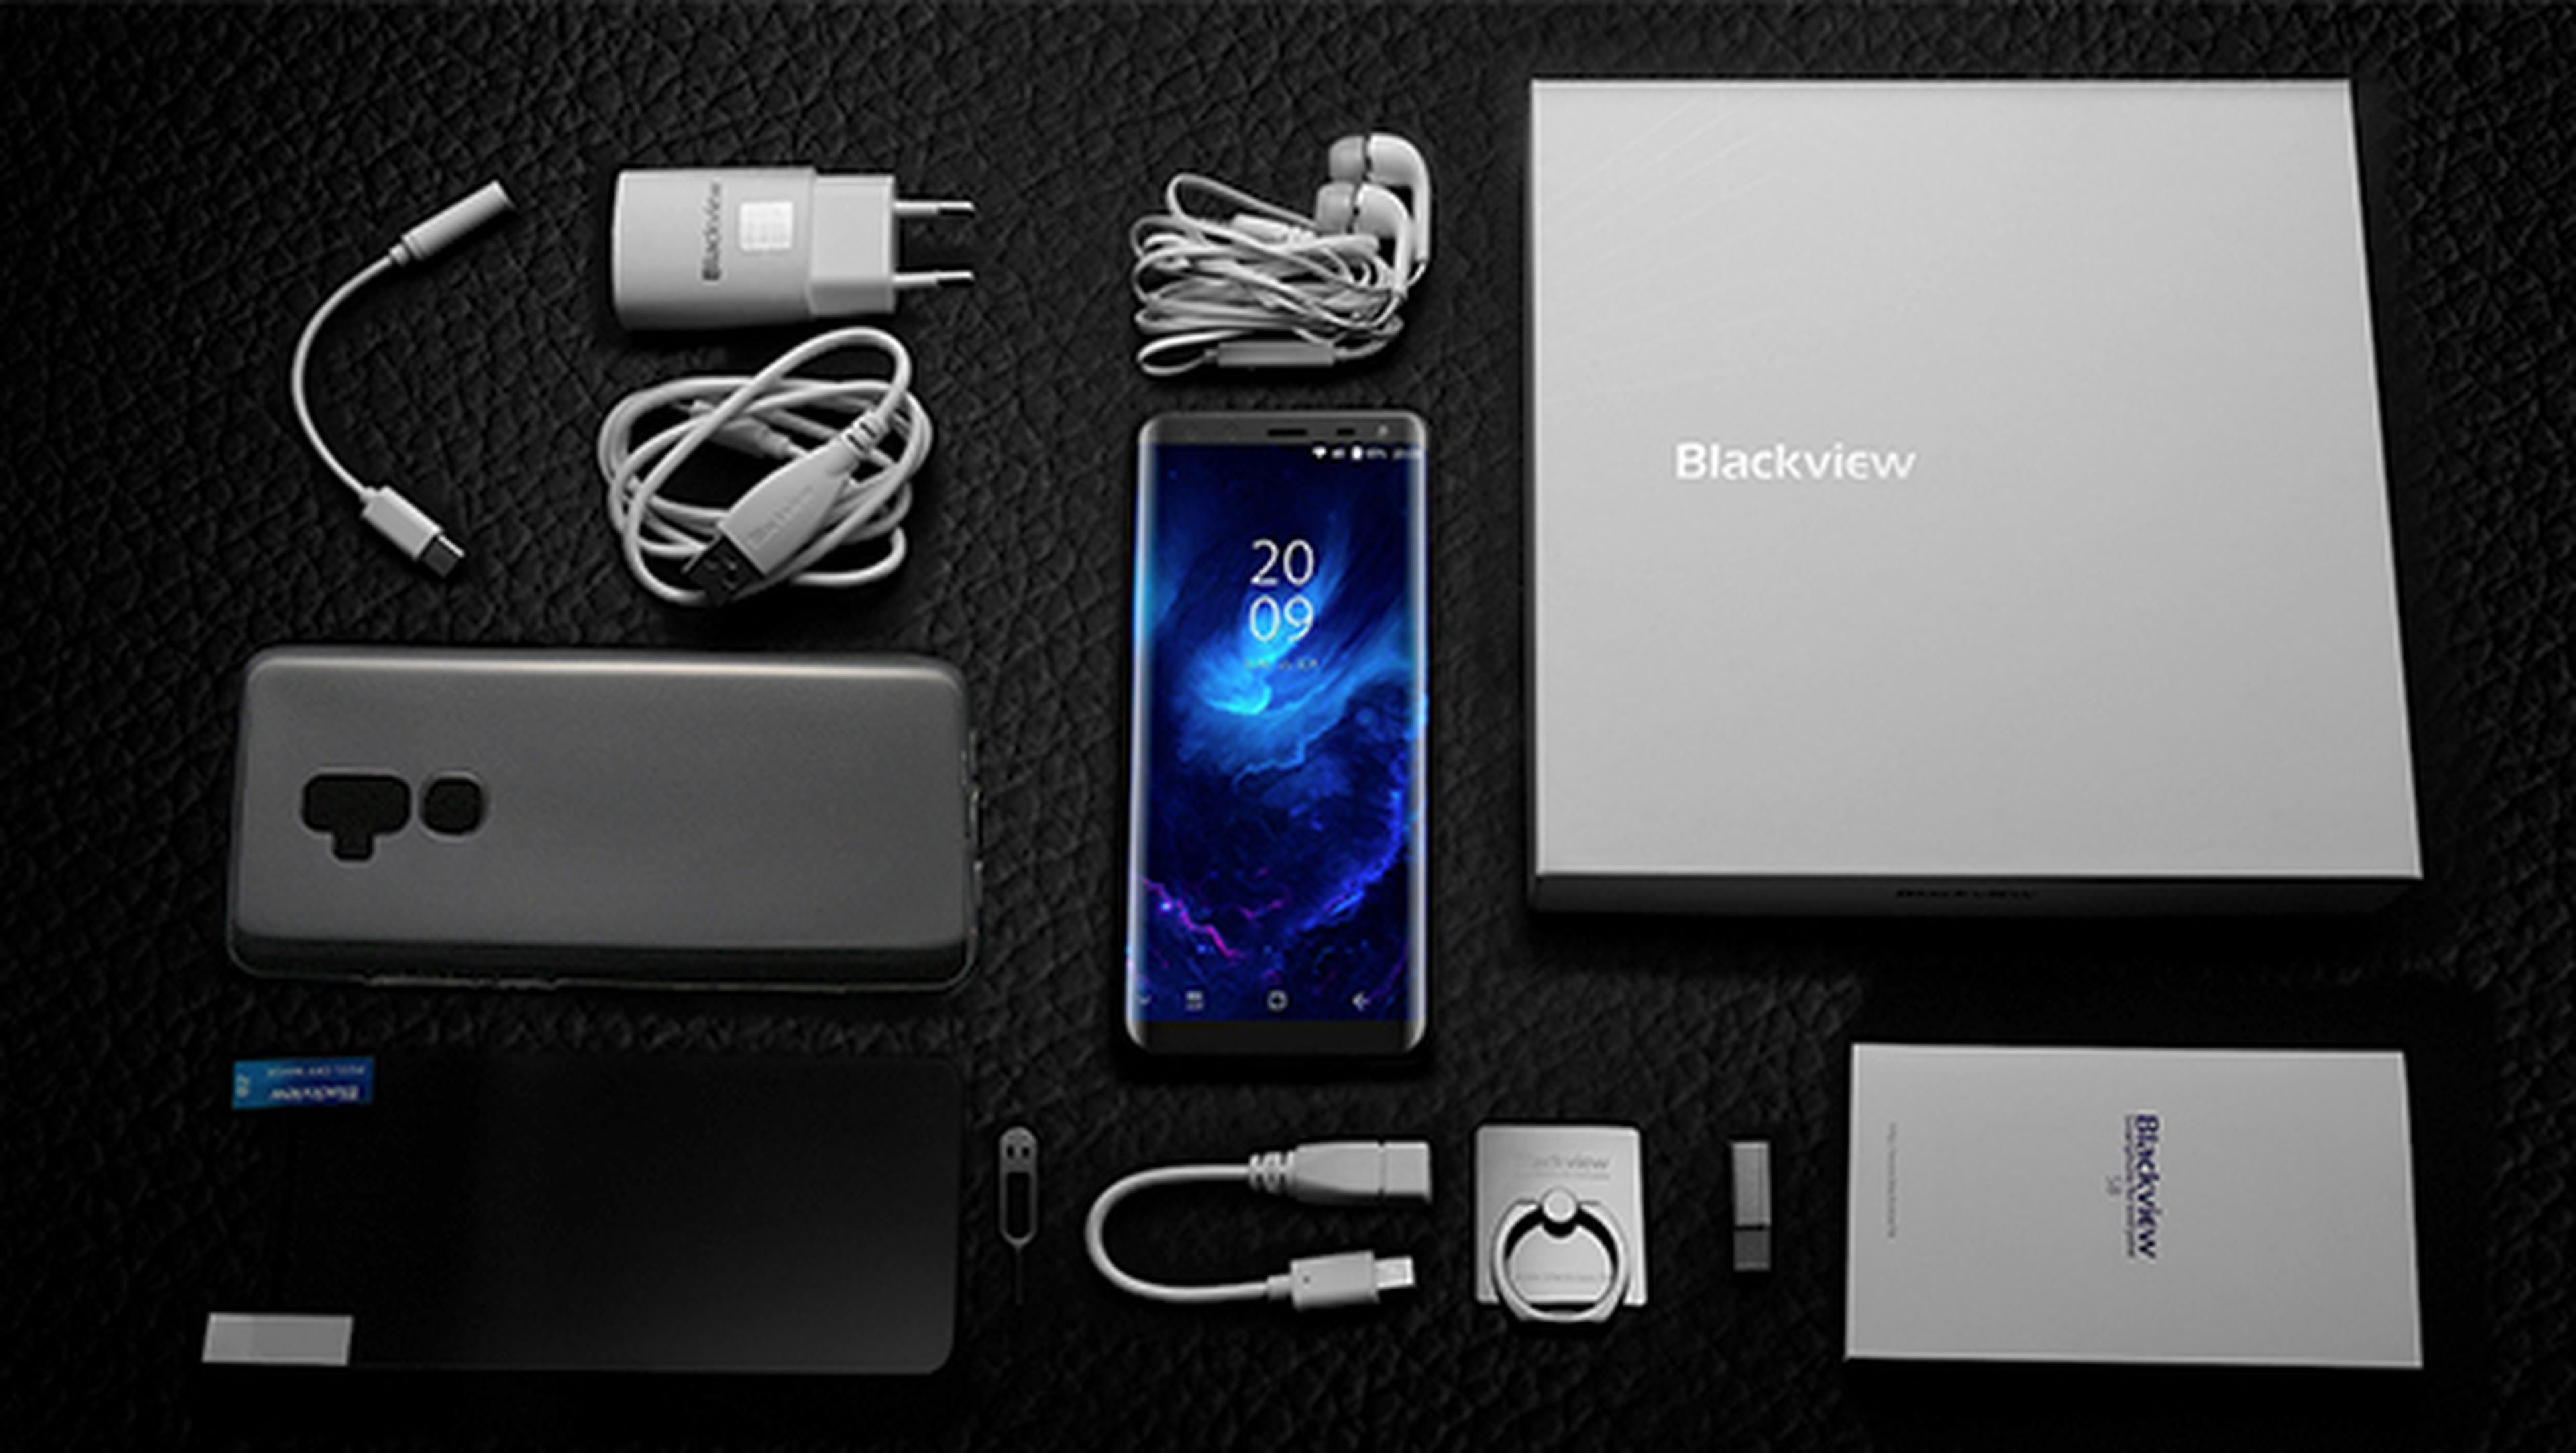 El 5º aniversario de Blackview traerá móviles por 39,59 dólares